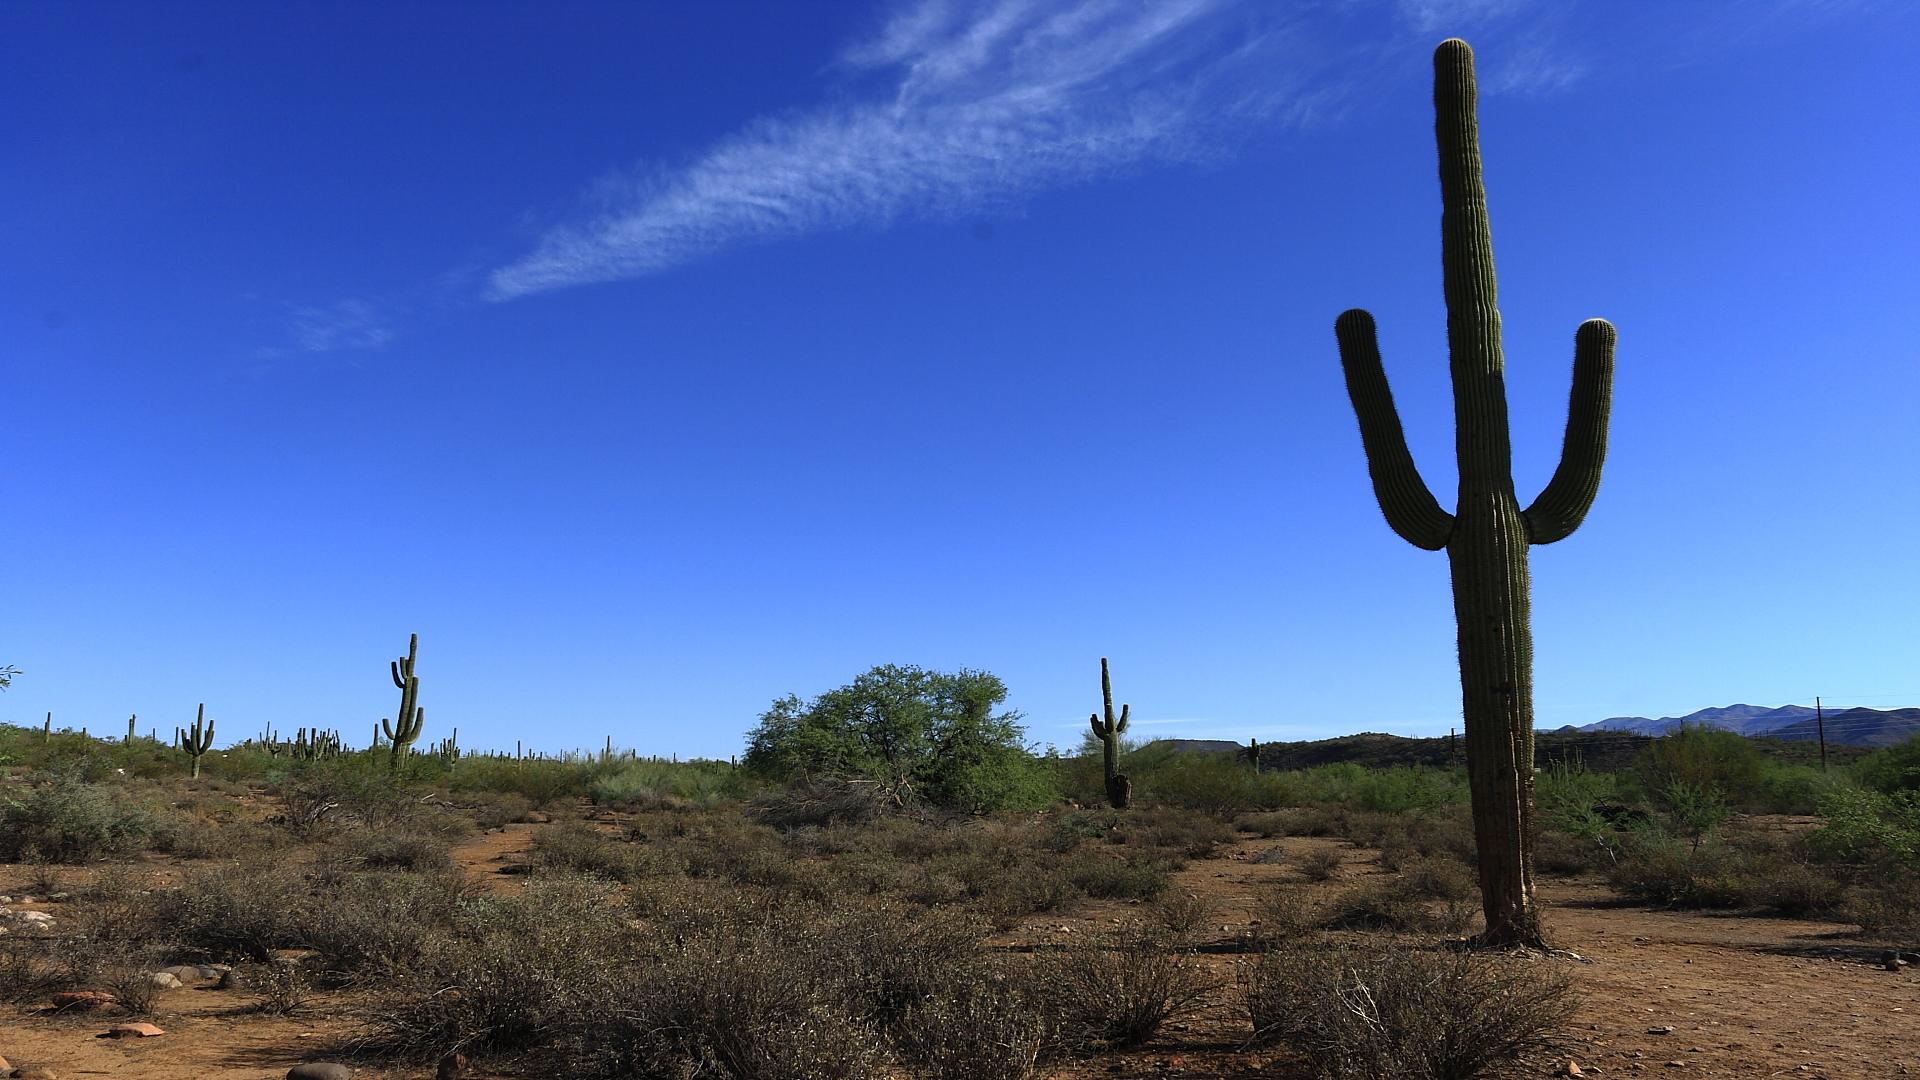 Cactus in Phoenix - USA...